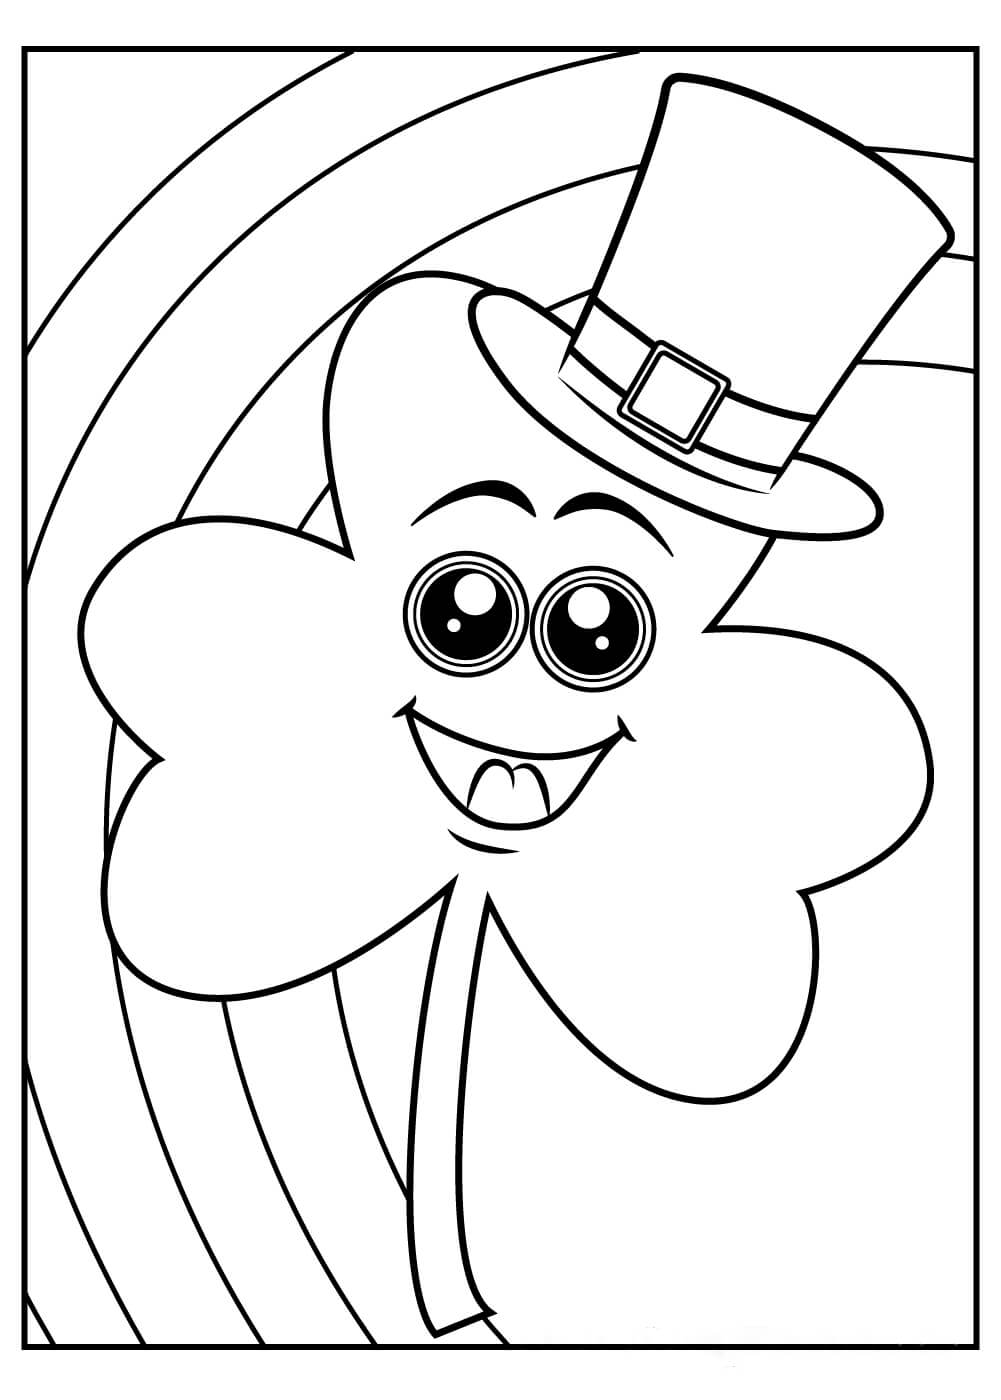 Fun shamrock wearing hat coloring page